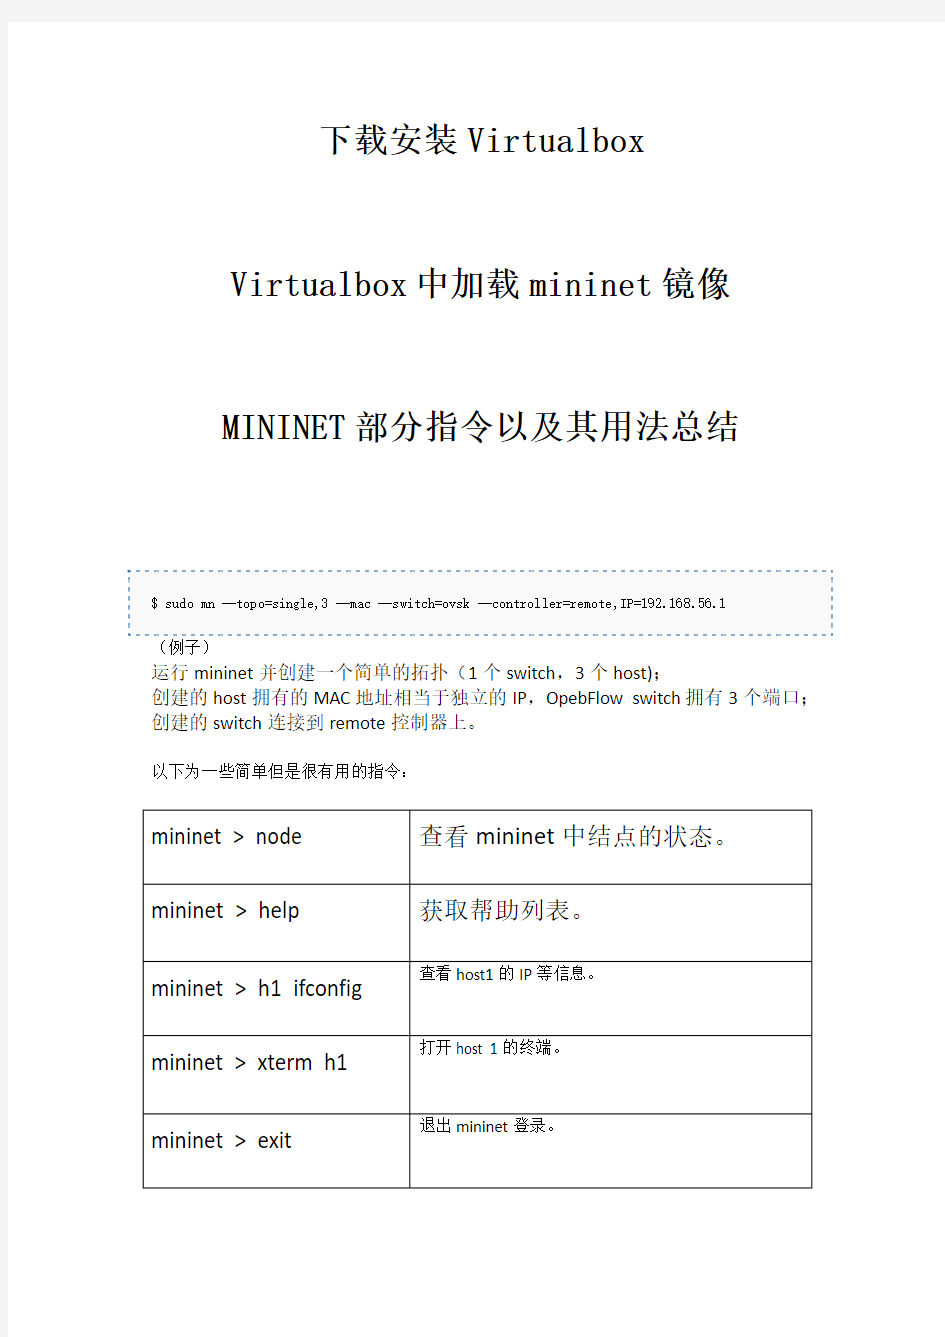 MININET部分指令以及其用法总结